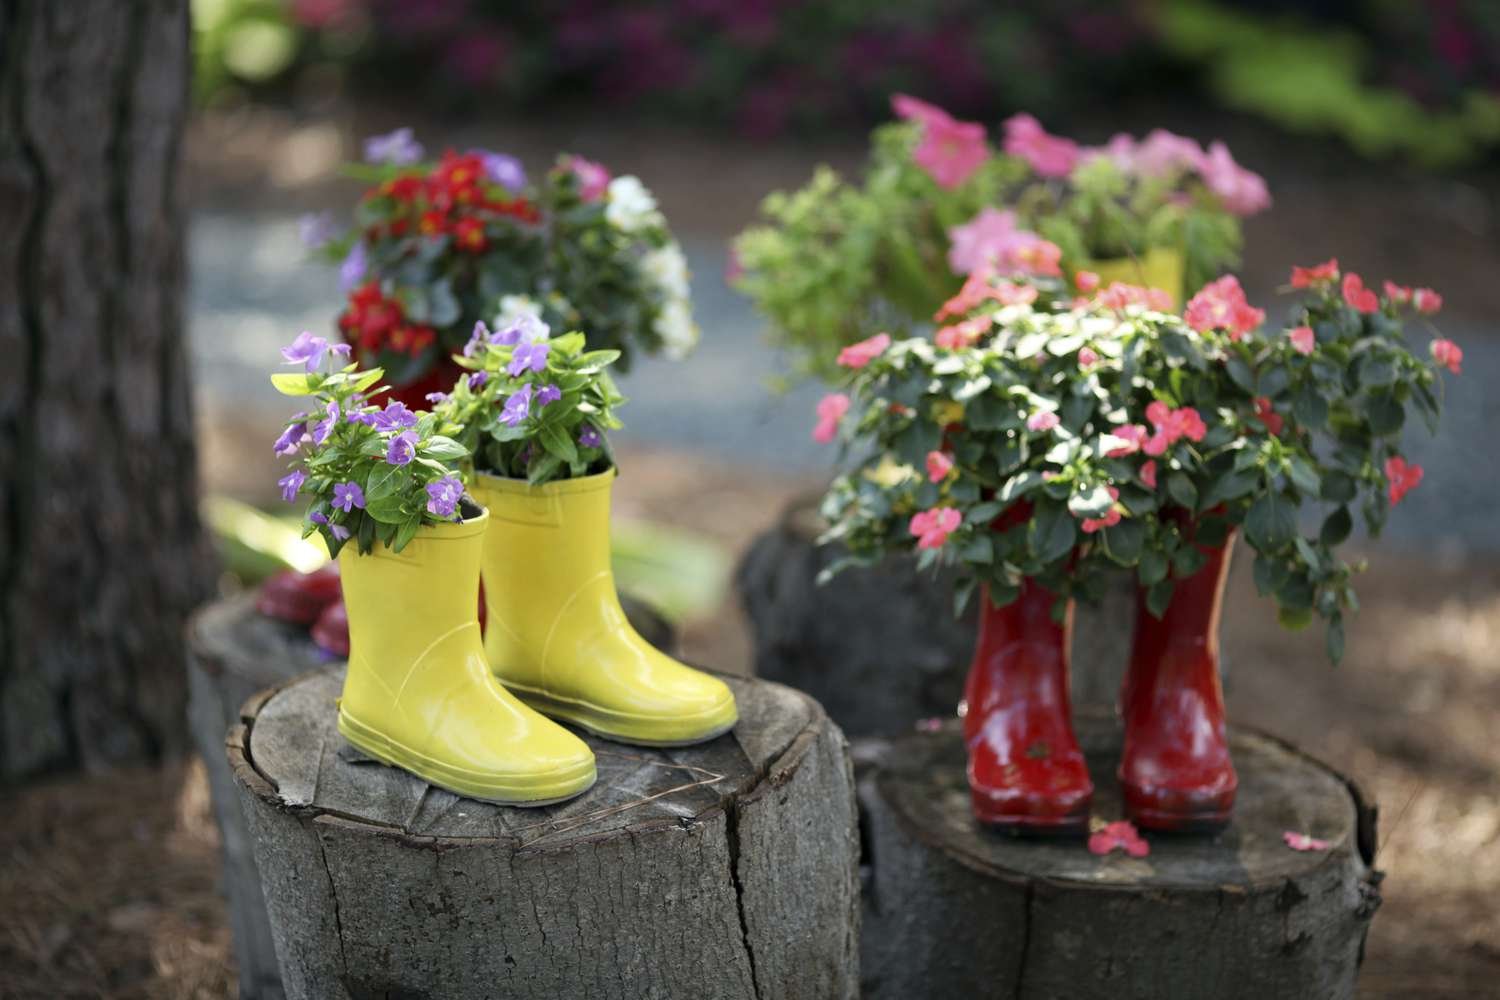 Цветы в резиновых сапожках | Деревенские фотографии, Обувь, Сапожки